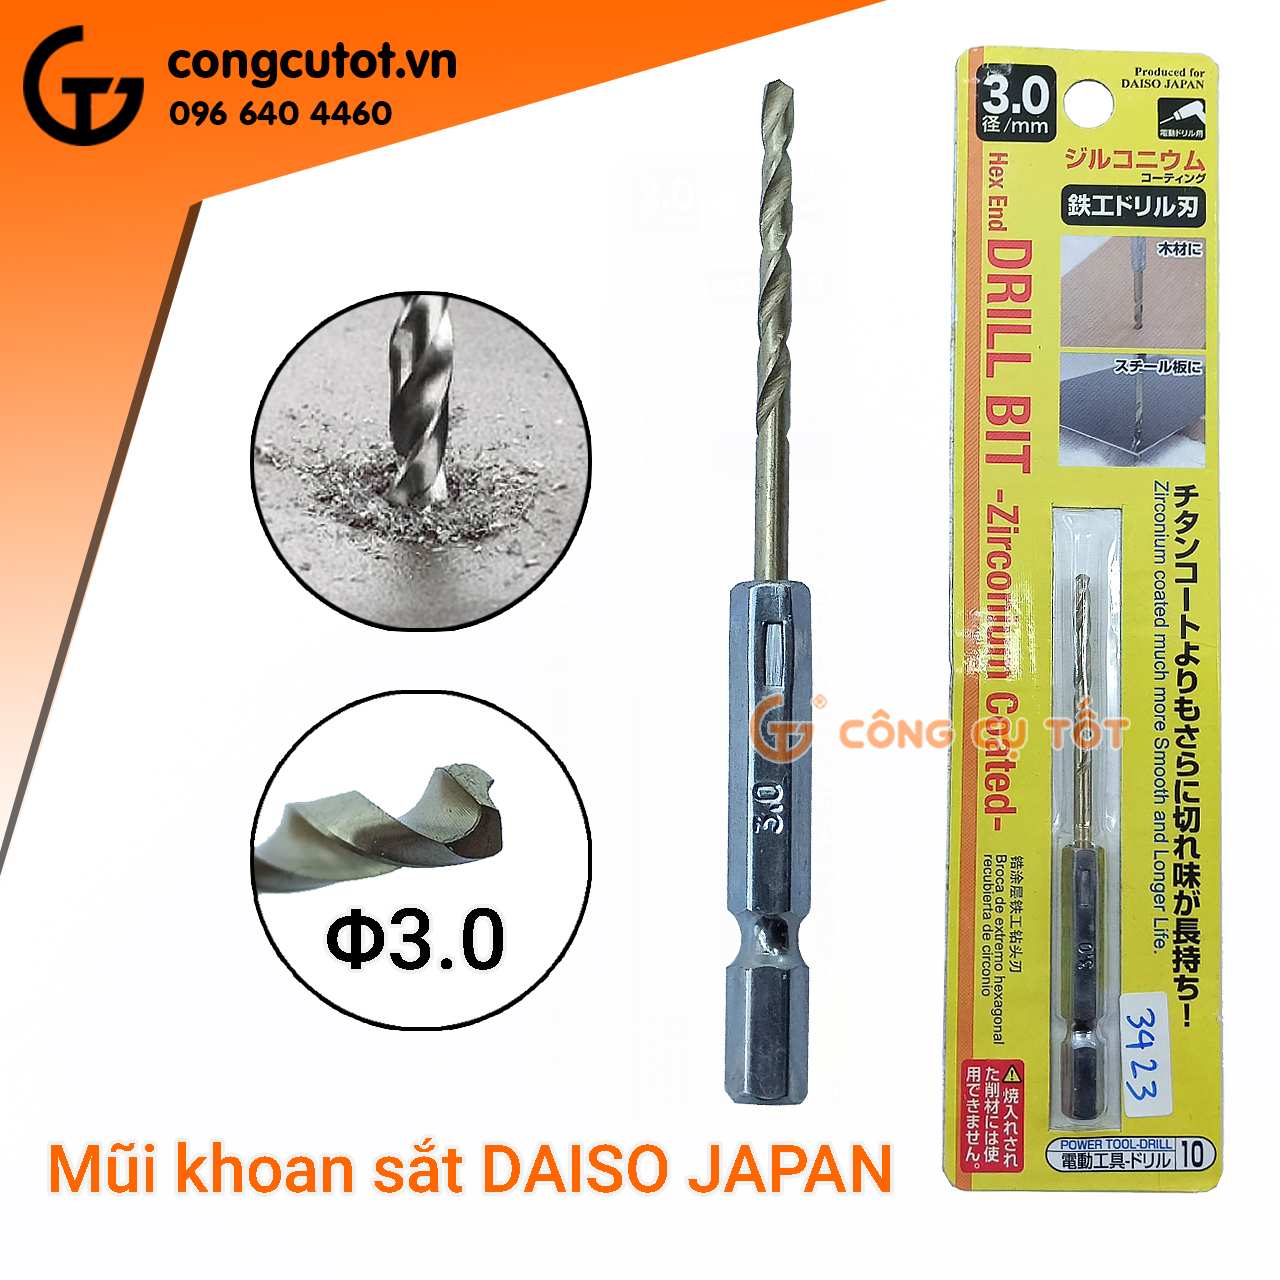 Mũi khoan sắt chuôi lục DAISO JAPAN bằng thép gió M2 mạ kẽm 90mm Φ3.0mm